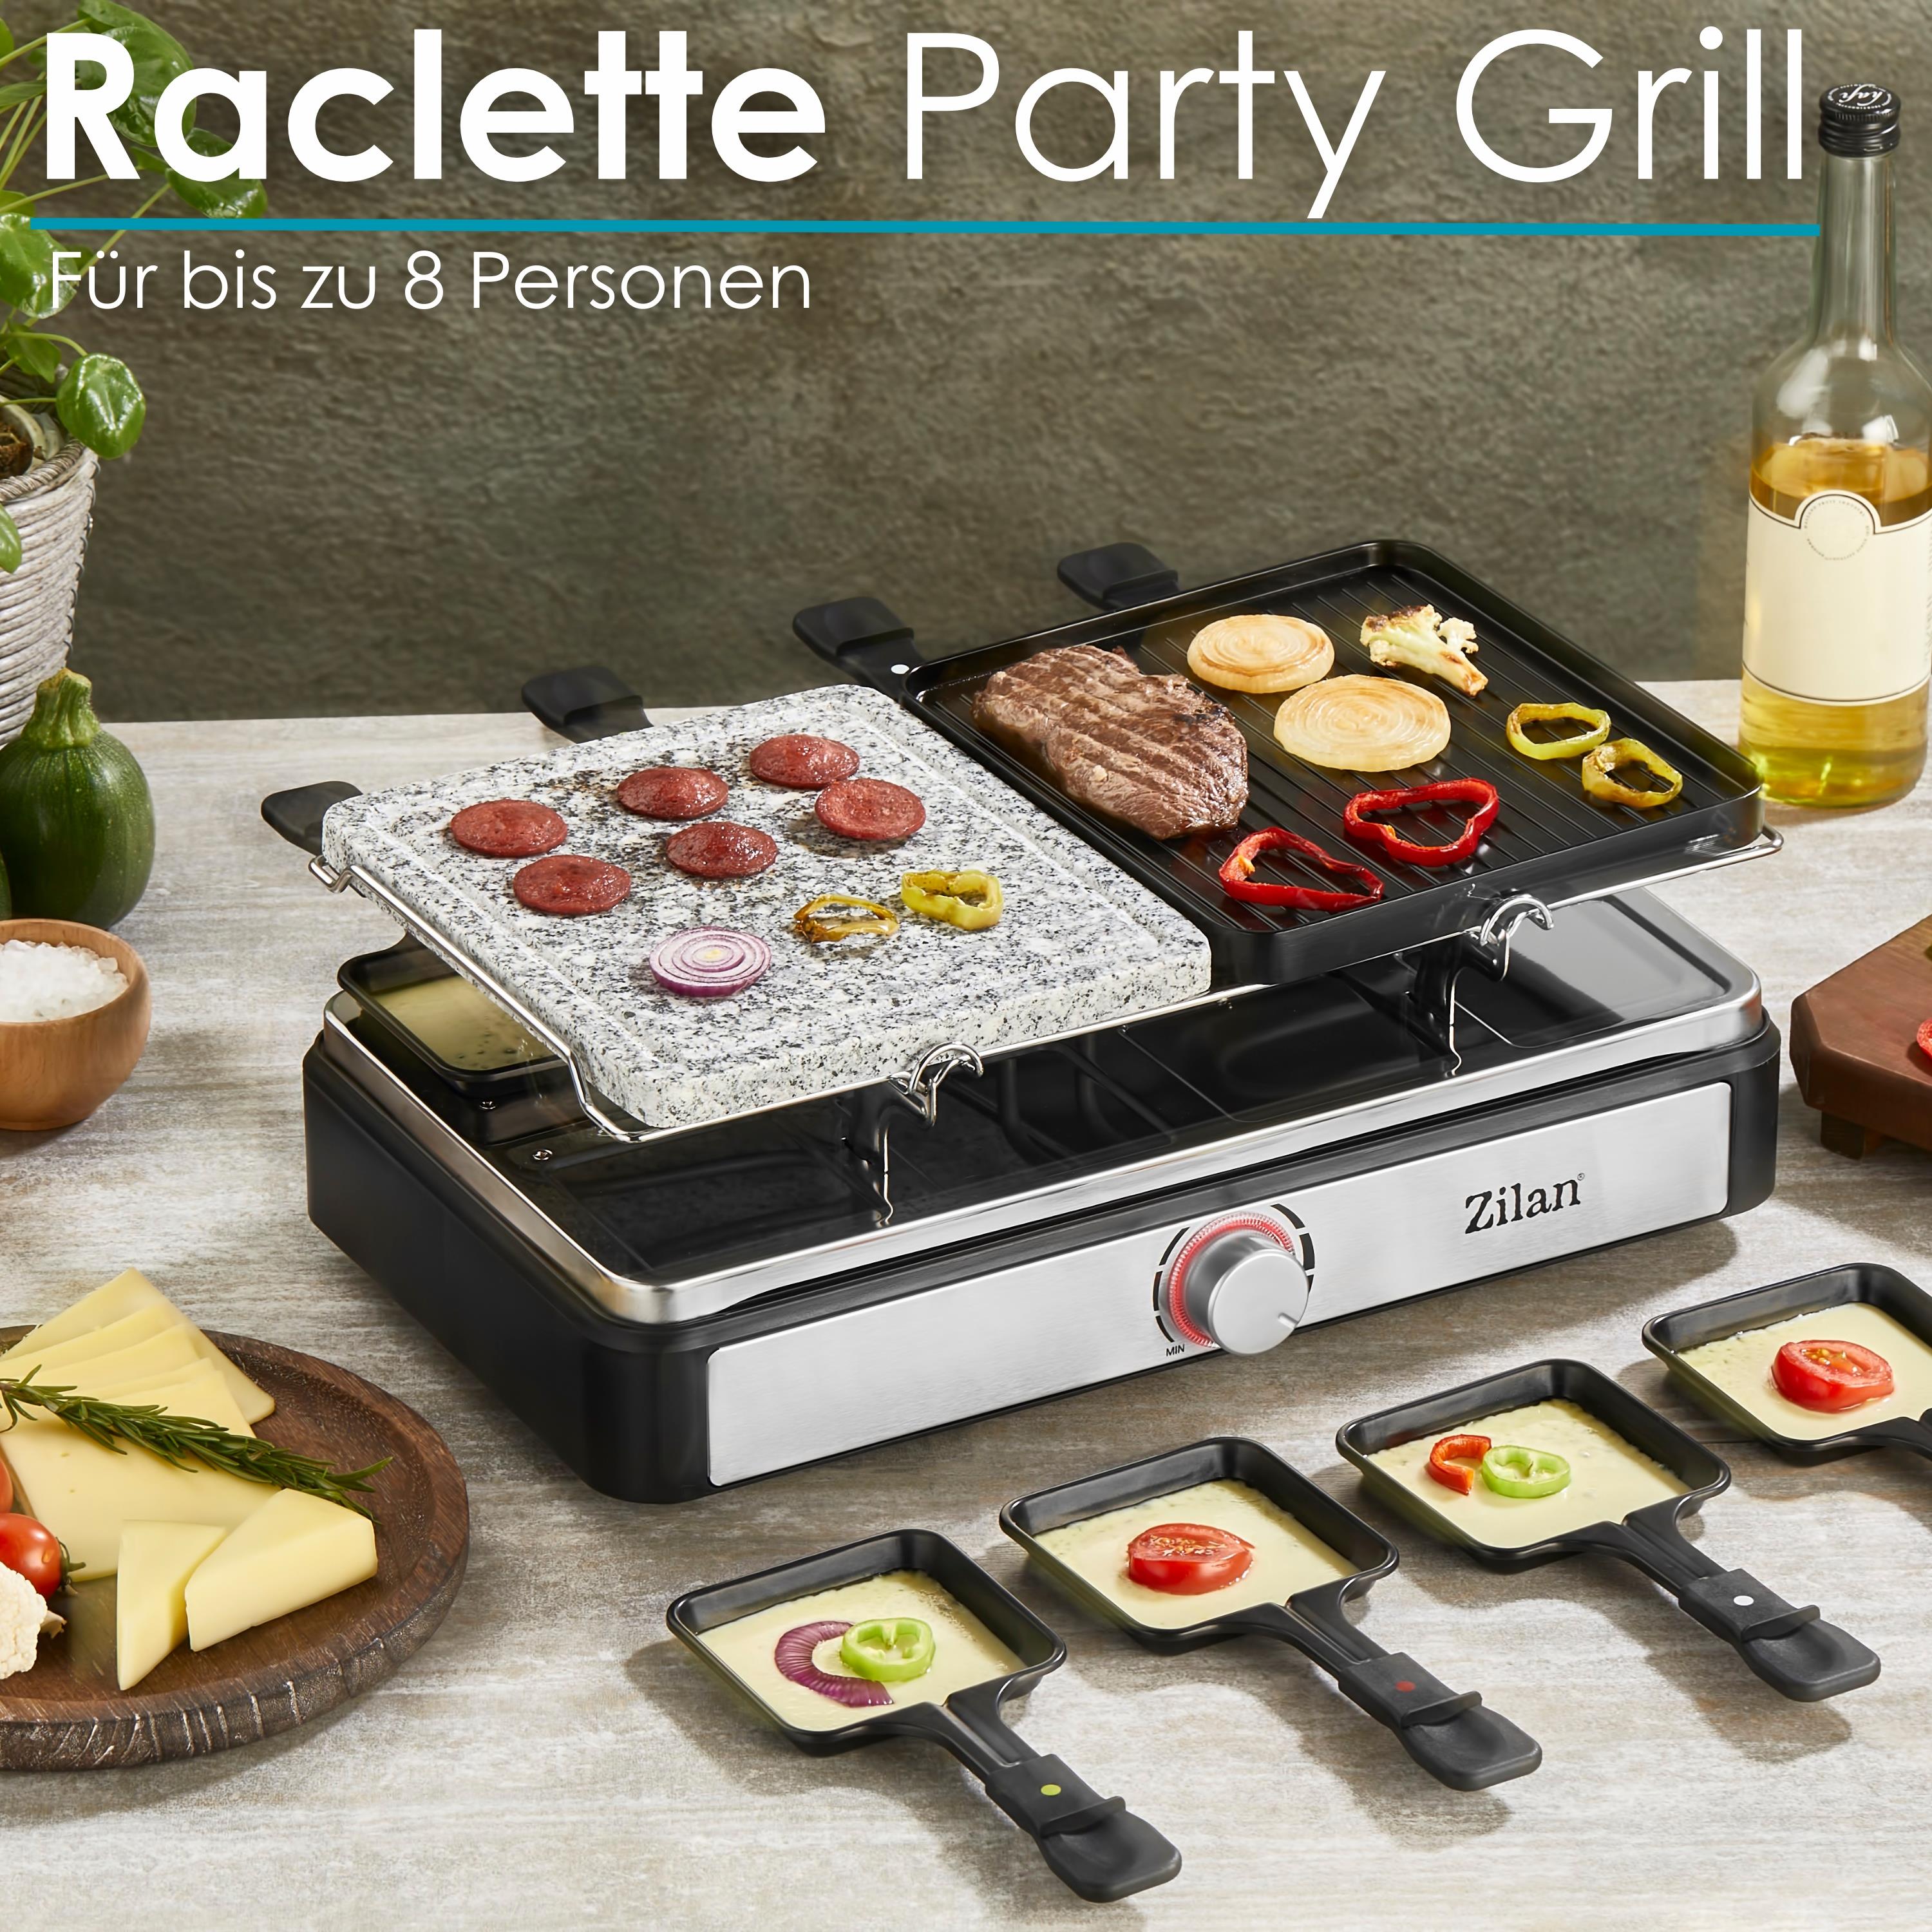 Zilan Raclette Grill | Raclette Party Grill für 8 Personen | Mit kombinierter Grillfläche